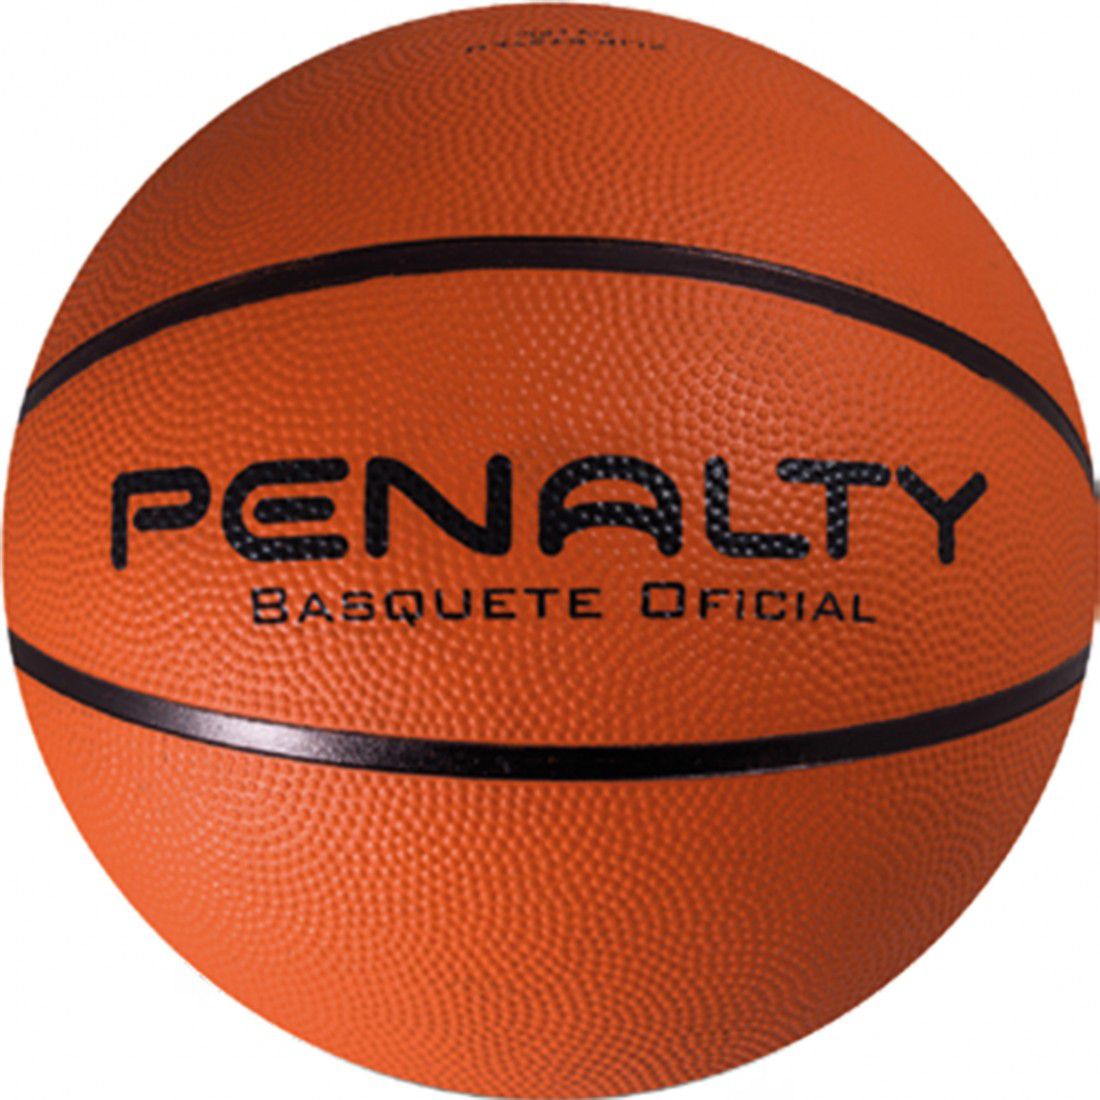 Bola de Basquete Penalty Playoff Oficial Adulto - Mercadão Dos Esportes,  loja de materiais esportivos